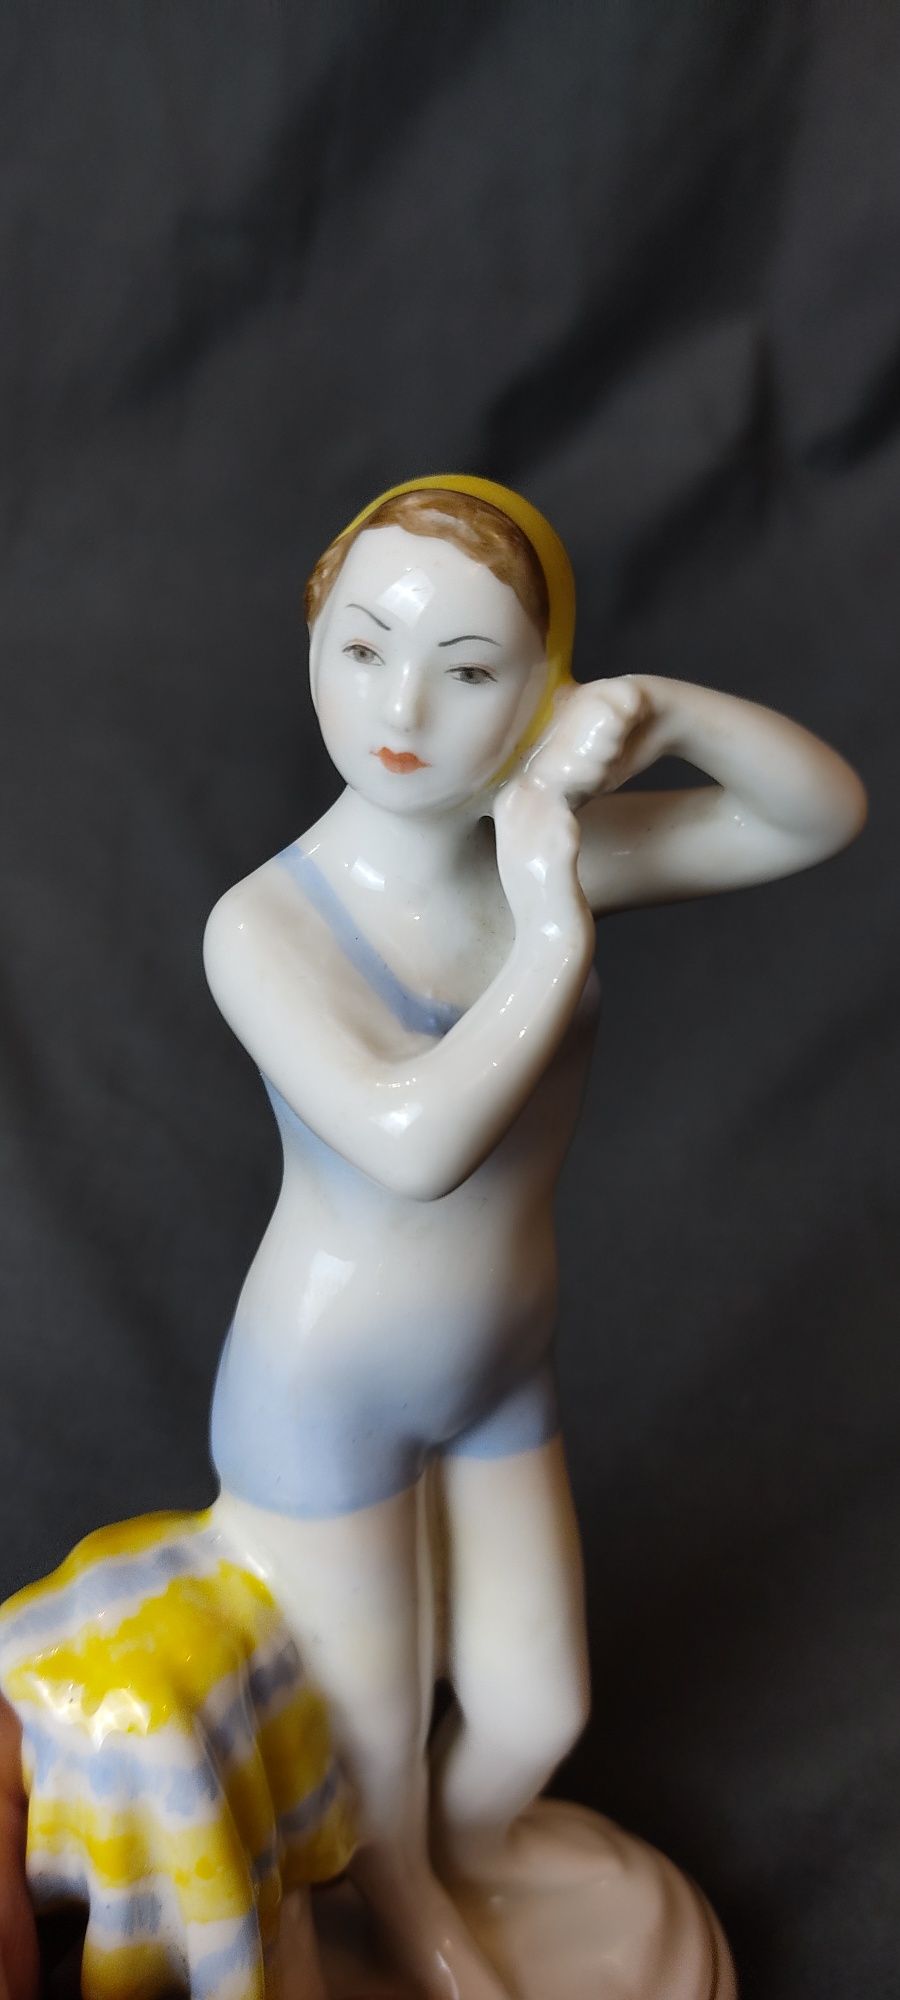 Фарфоровая статуэтка лфз юная плавчиха купальщица